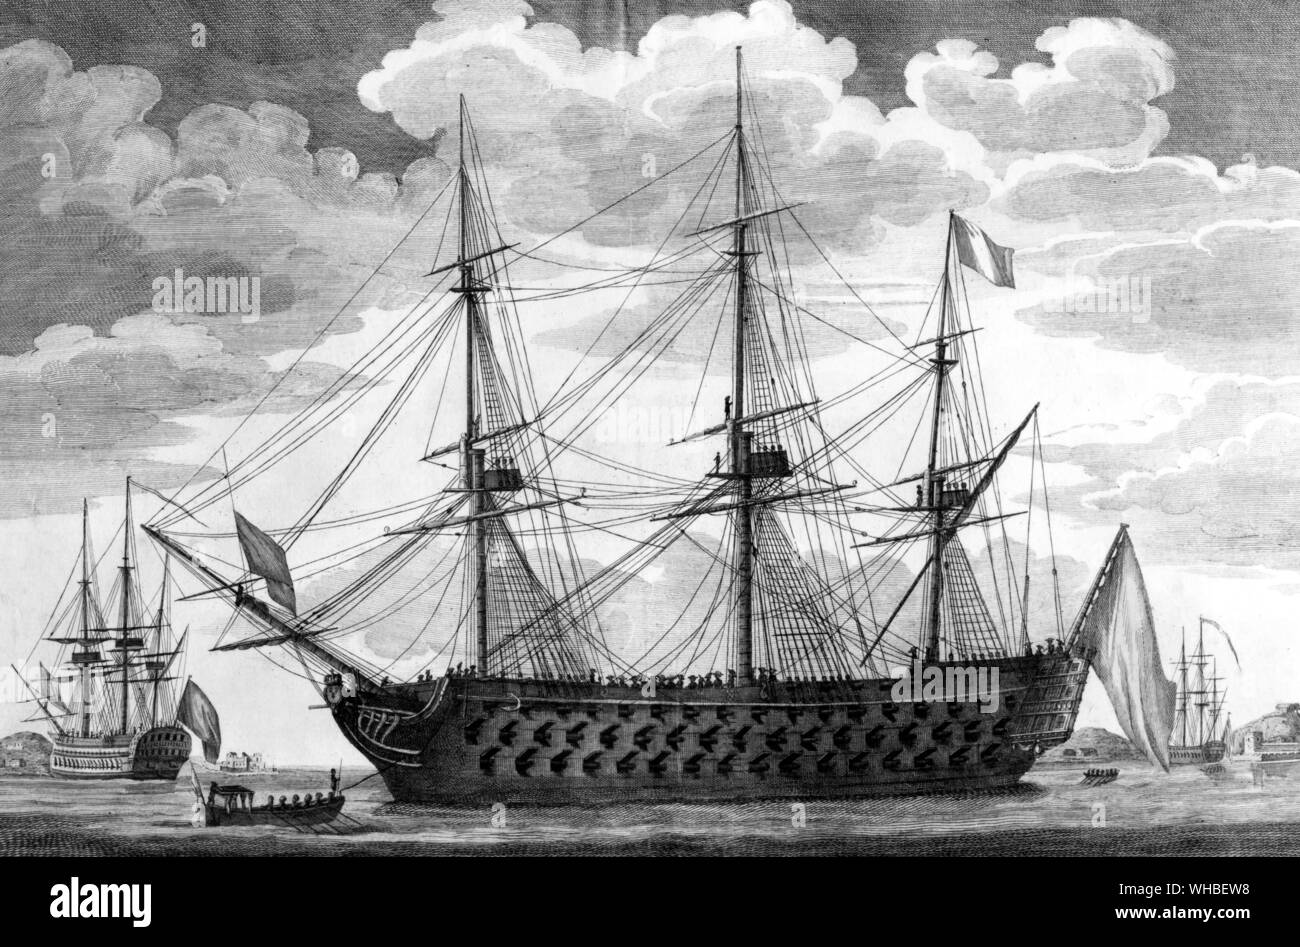 Le Commerce de Marseille - Veifseau Francaise 118 Dosen. - 1793 - Color Line Zeichnung von Emmerich - Océan - Typ Schiffe der Linie gestartet wurden eine Reihe von 16-118-gun Schiffe der französischen Marine, entworfen von Ingenieur Jacques-Noël Sané. Fünfzehn wurden 1788 abgeschlossen, und die letzte Eingabe Service in 1854. Die erste der Serie wurde die Commerce de Marseille.. Die 5.100 Tonnen schwere 118-Spritzpistole Typ war der größte Schiffstyp bis dahin gebaut.. Bis zu 1790 Großbritannien, das größte der Kampf flotte Nationen, hatte nicht besonders großen Schlachtschiffe gebaut, weil die Notwendigkeit Stockfoto